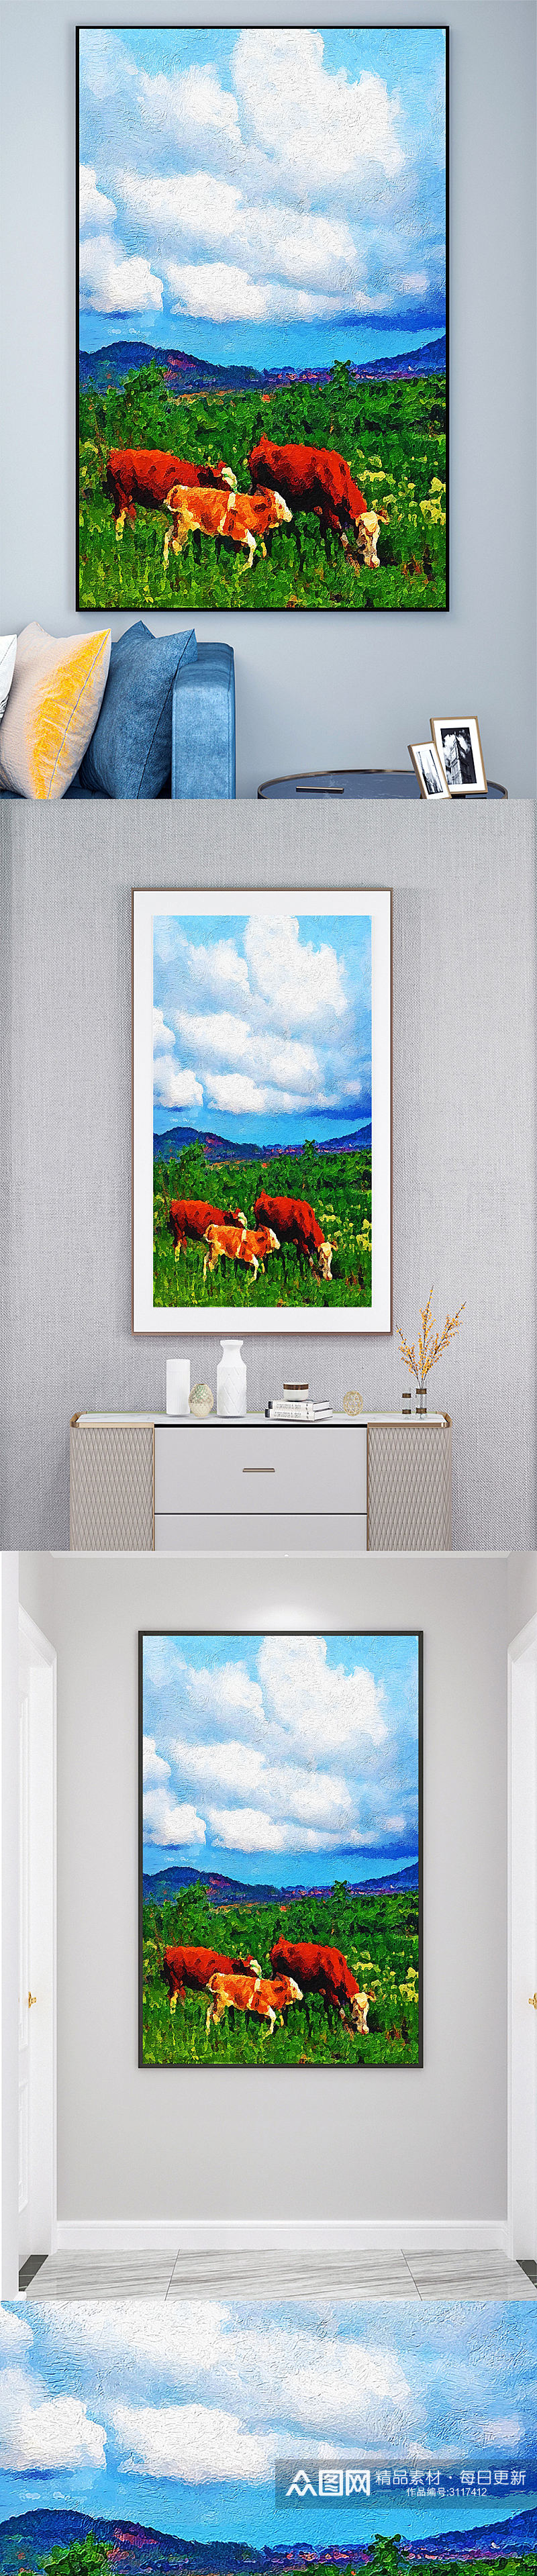 牛动物油画装饰画素材